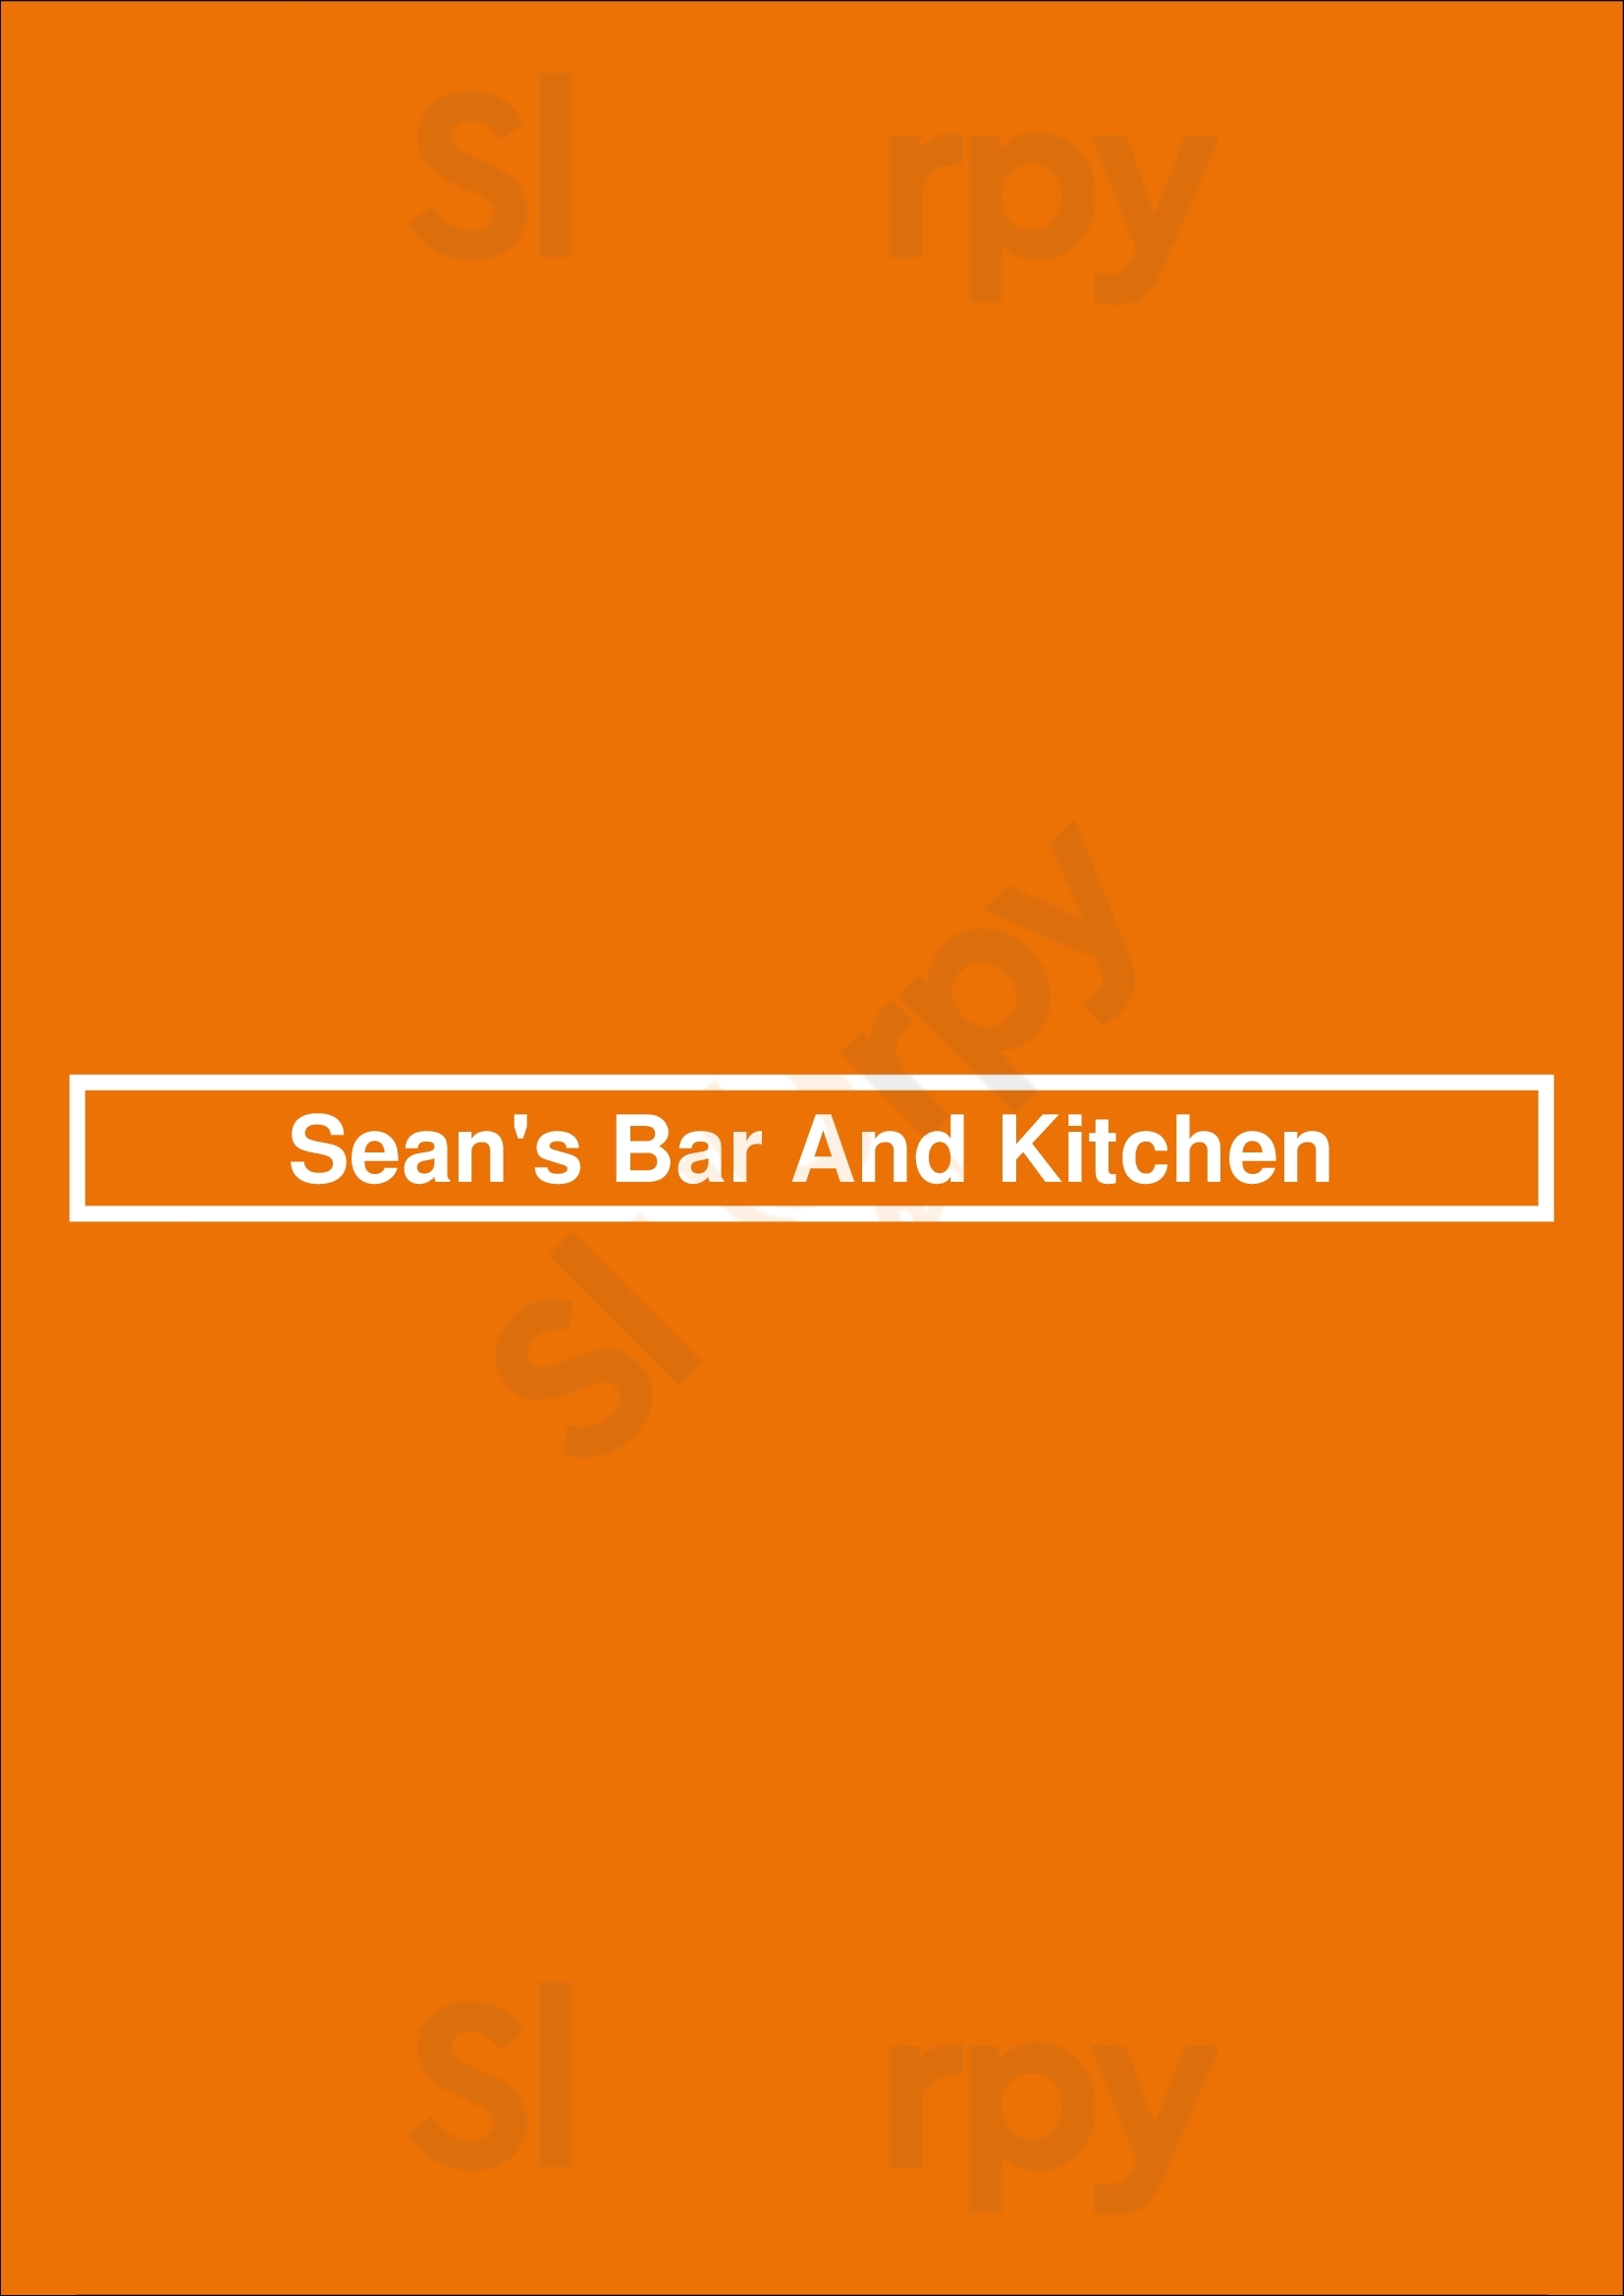 Sean's Bar And Kitchen New York City Menu - 1